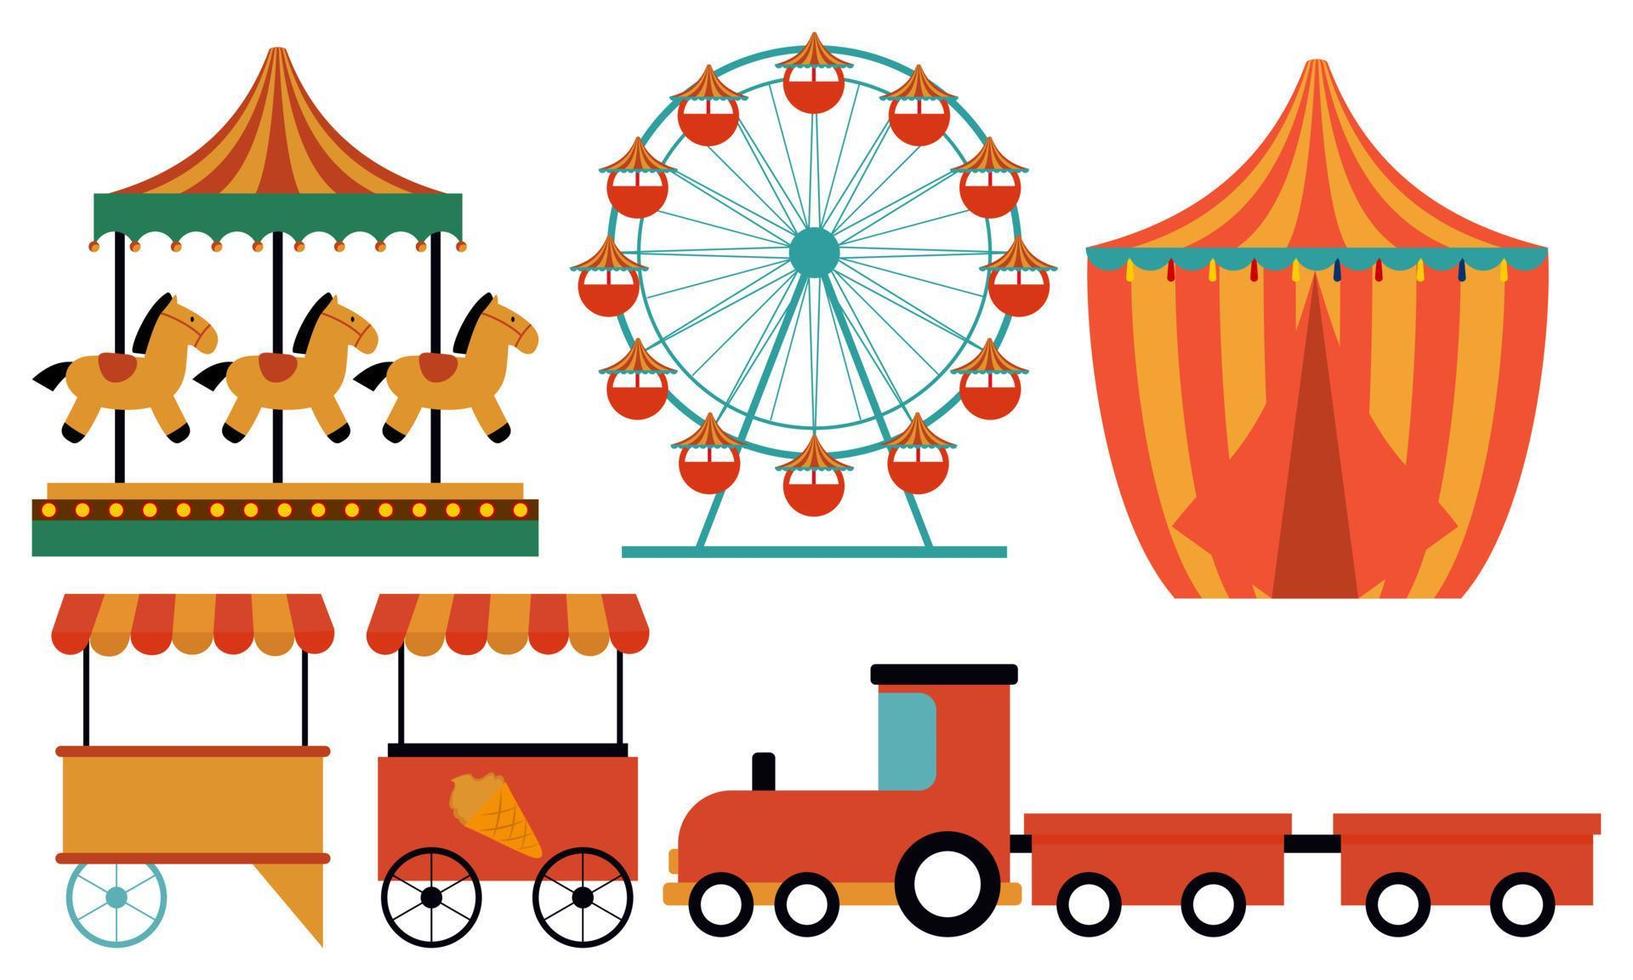 Attraktionen im Vergnügungspark. Faschings-Kinderkarussell, Riesenrad-Attraktion und lustiger Rummelplatz e vektor